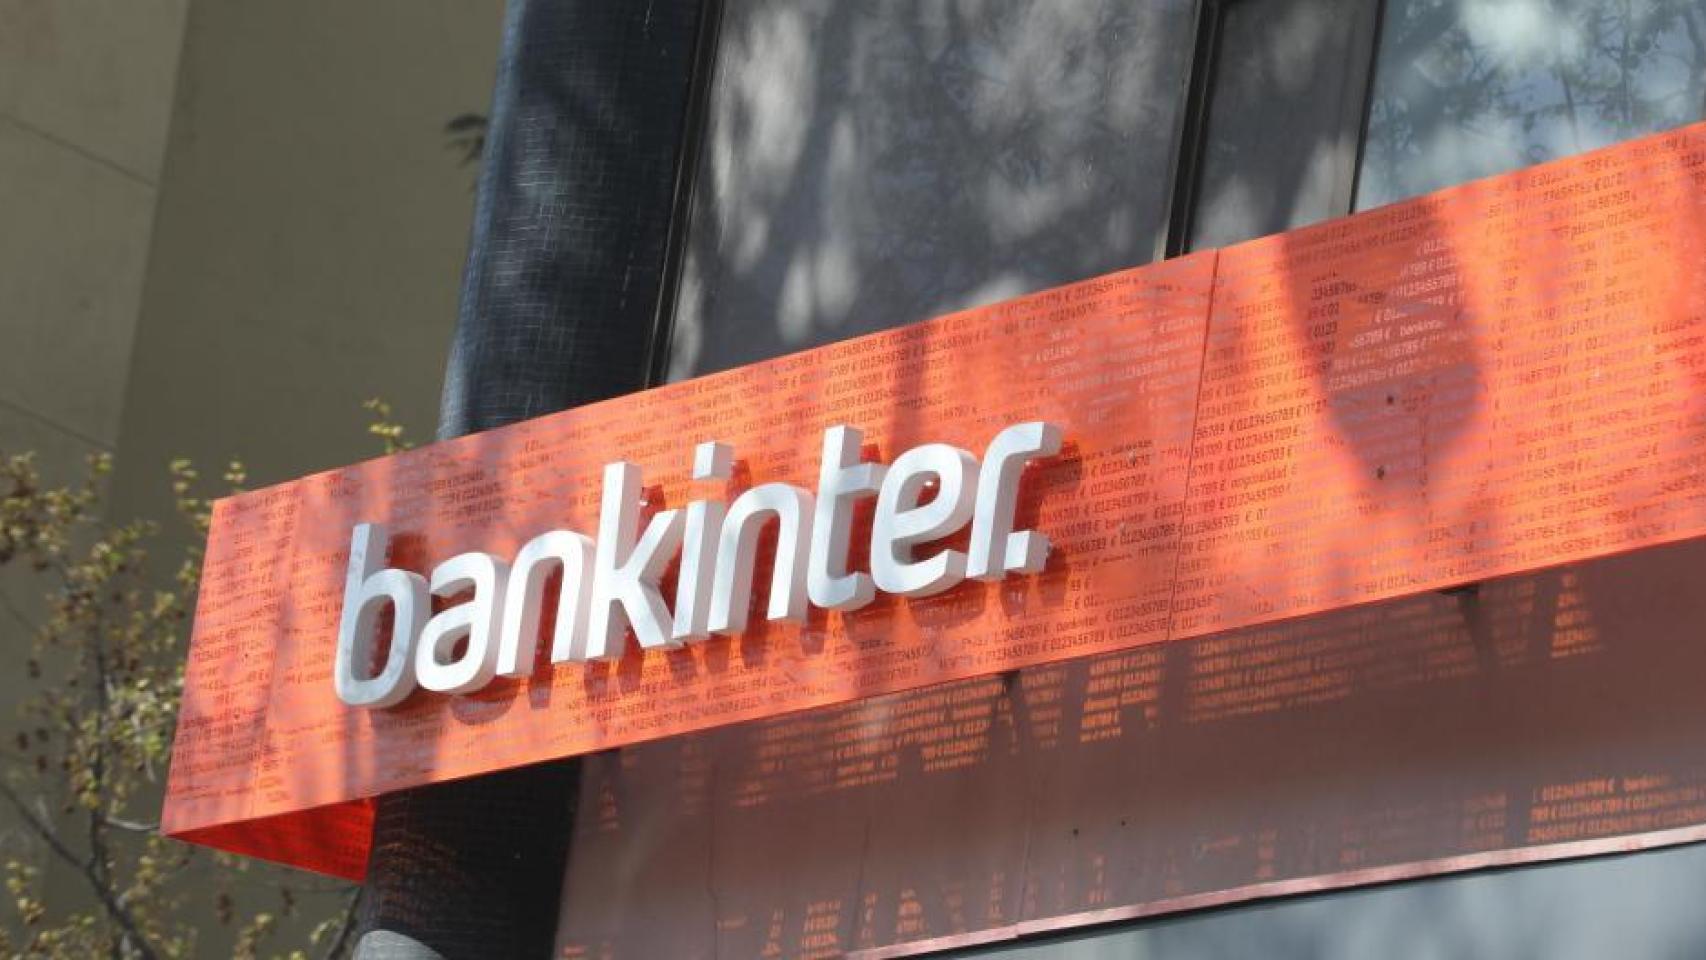 Logo de Bankinter.